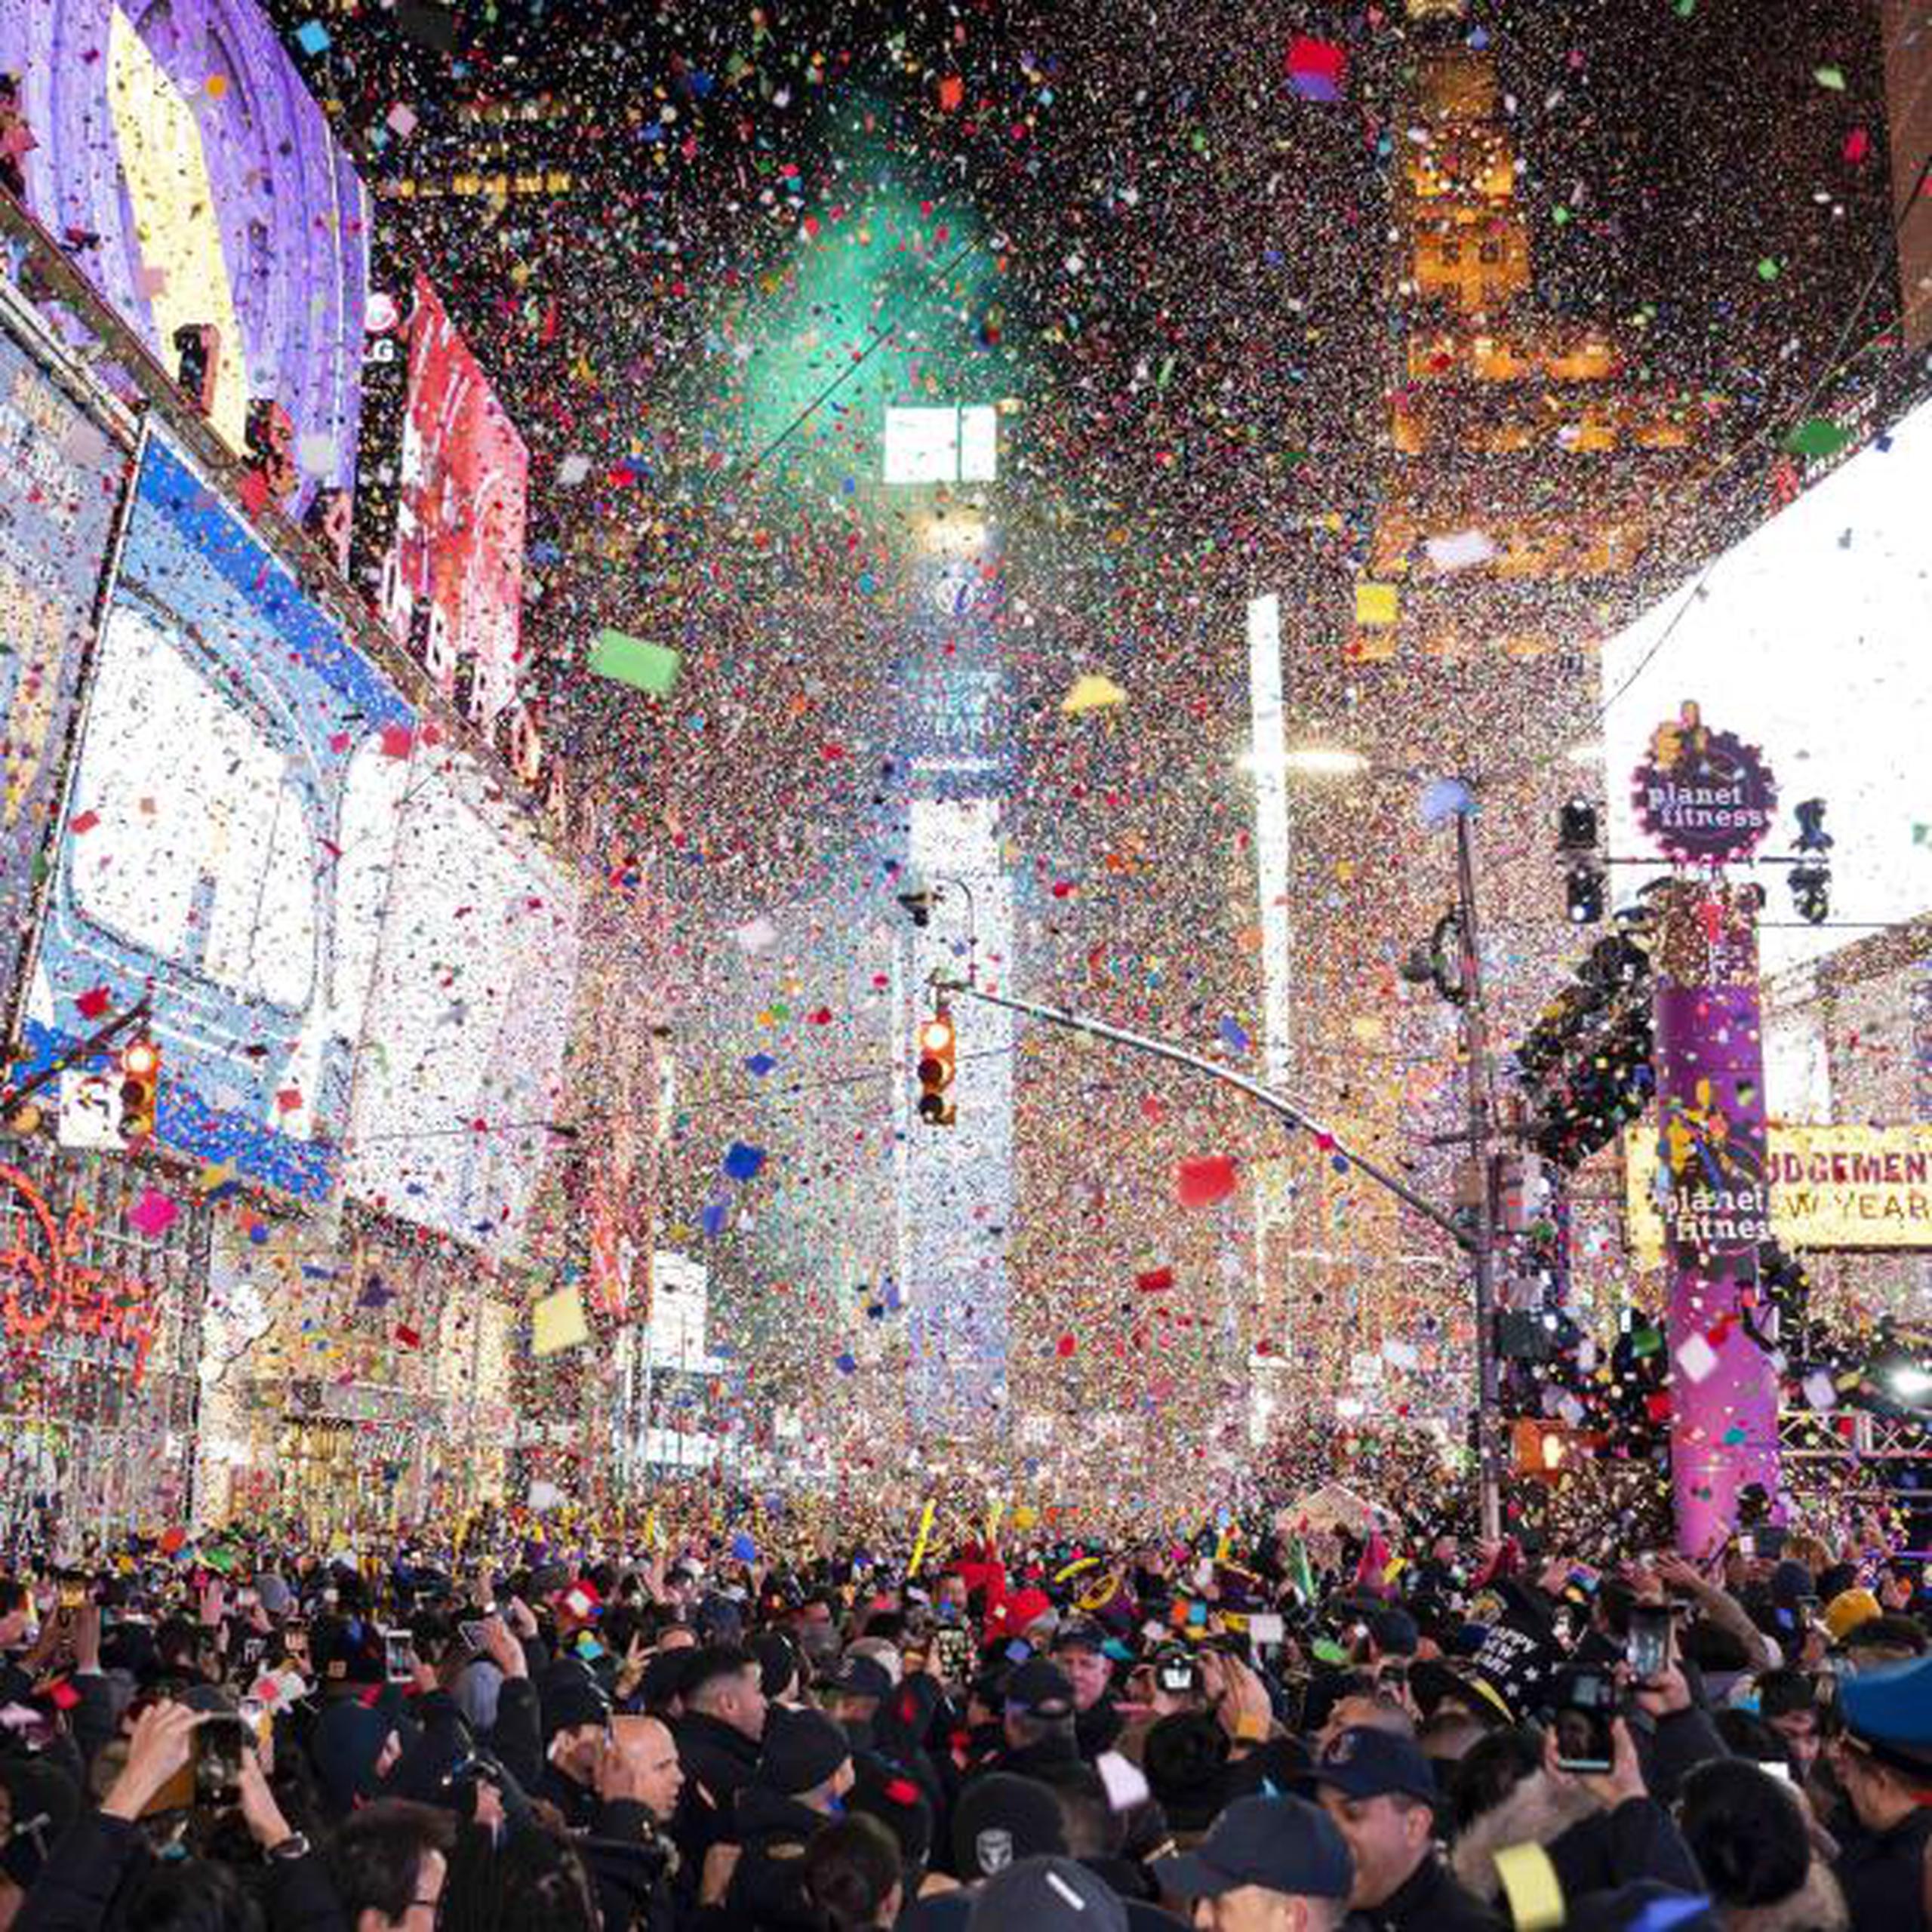 La celebración del cambio de año llegó tras muchas horas de espera para la mayoría de los que llenaban Times Square. (Ben Hider / Invision / AP)